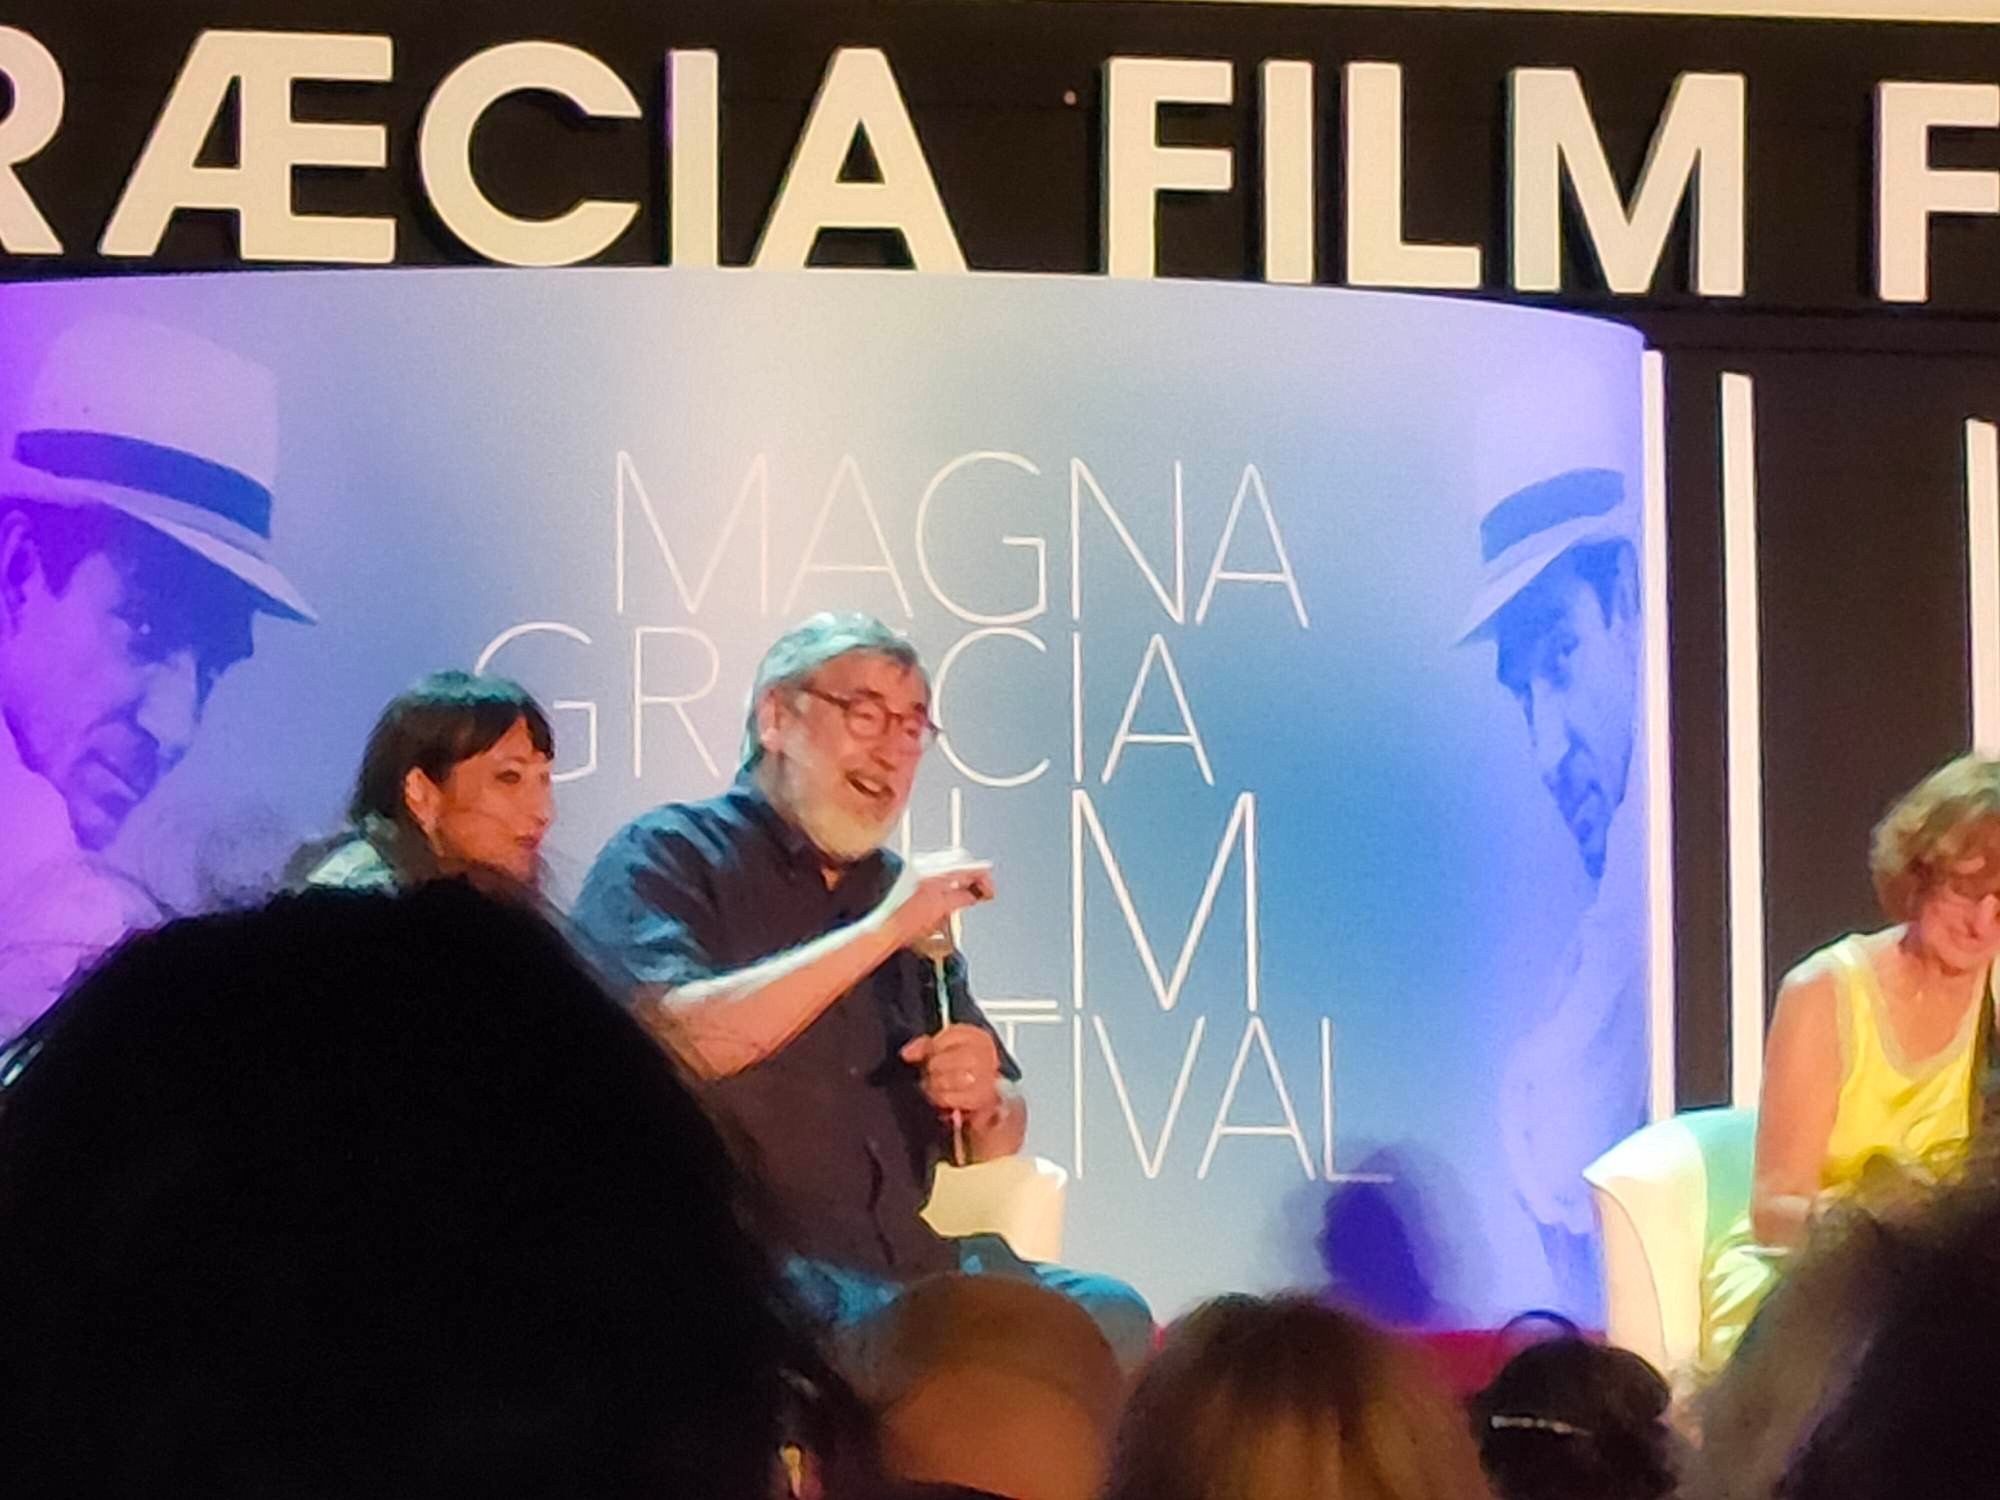 John Landis, Magna Graecia Film Festival